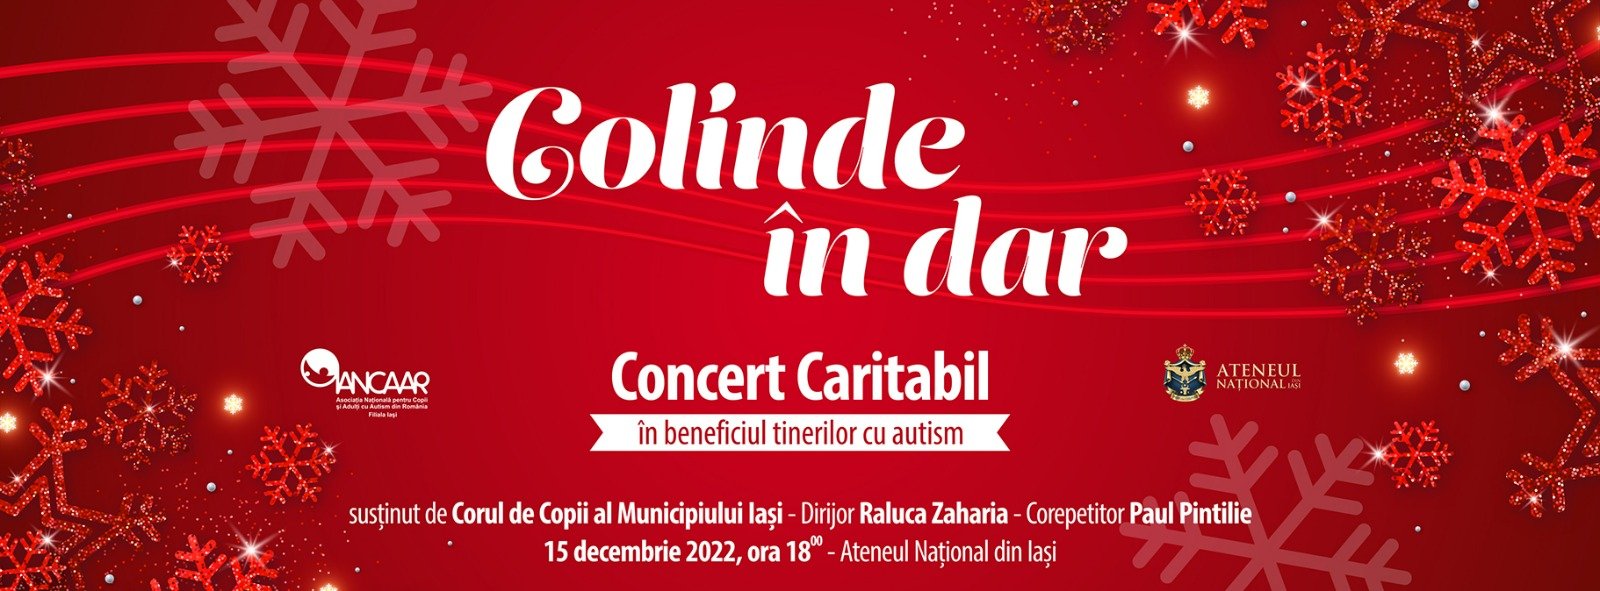  Concert caritabil pentru tinerii cu autism